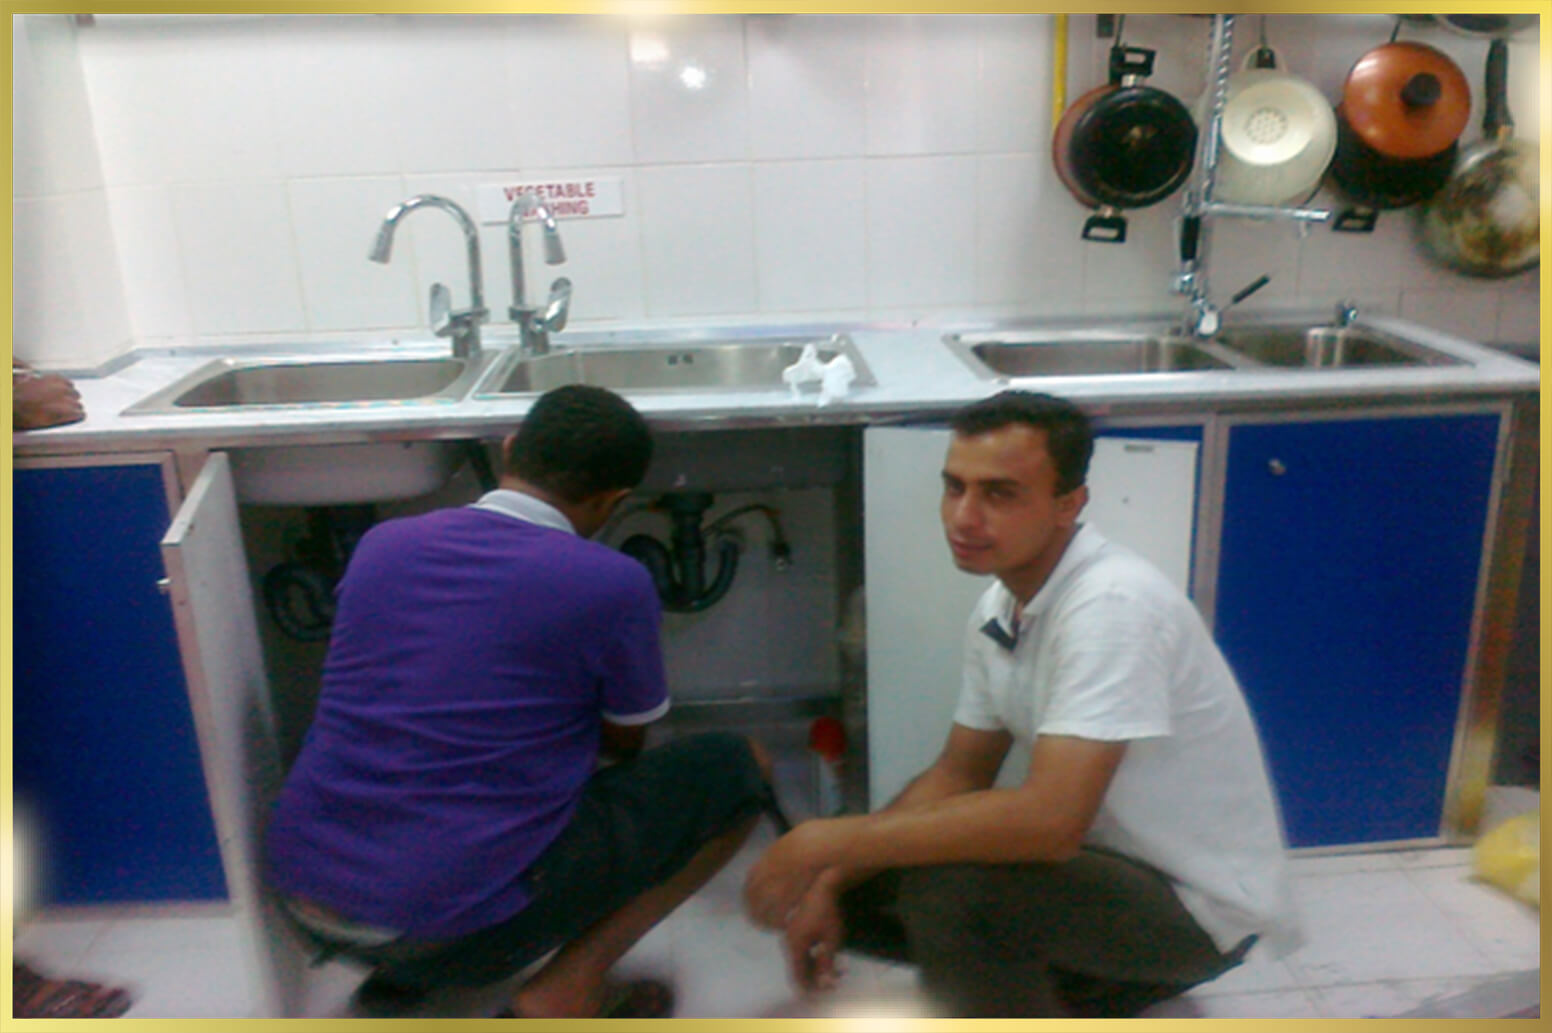 Stainless Steel Kitchen Sink UAE